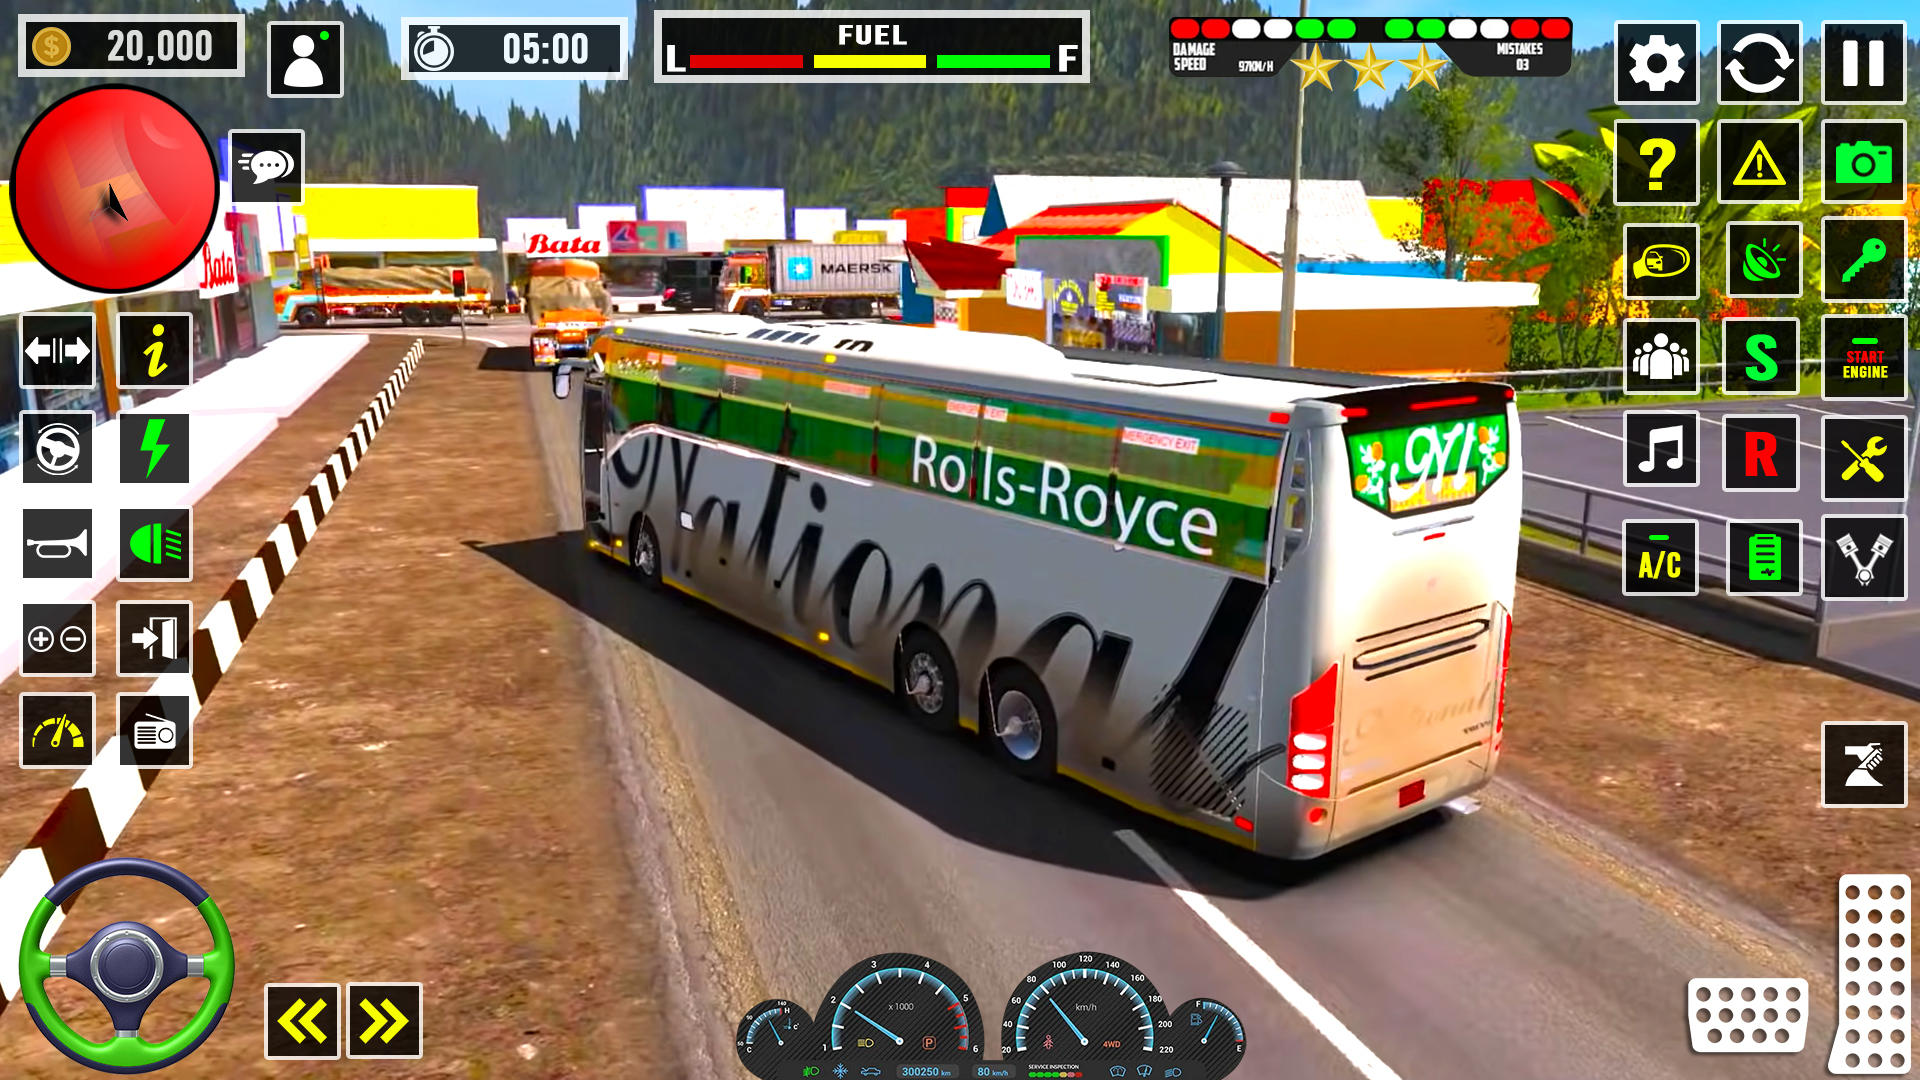 Screenshot 1 of Juegos de autobuses de conducción de autocares de EE. UU. 0.1